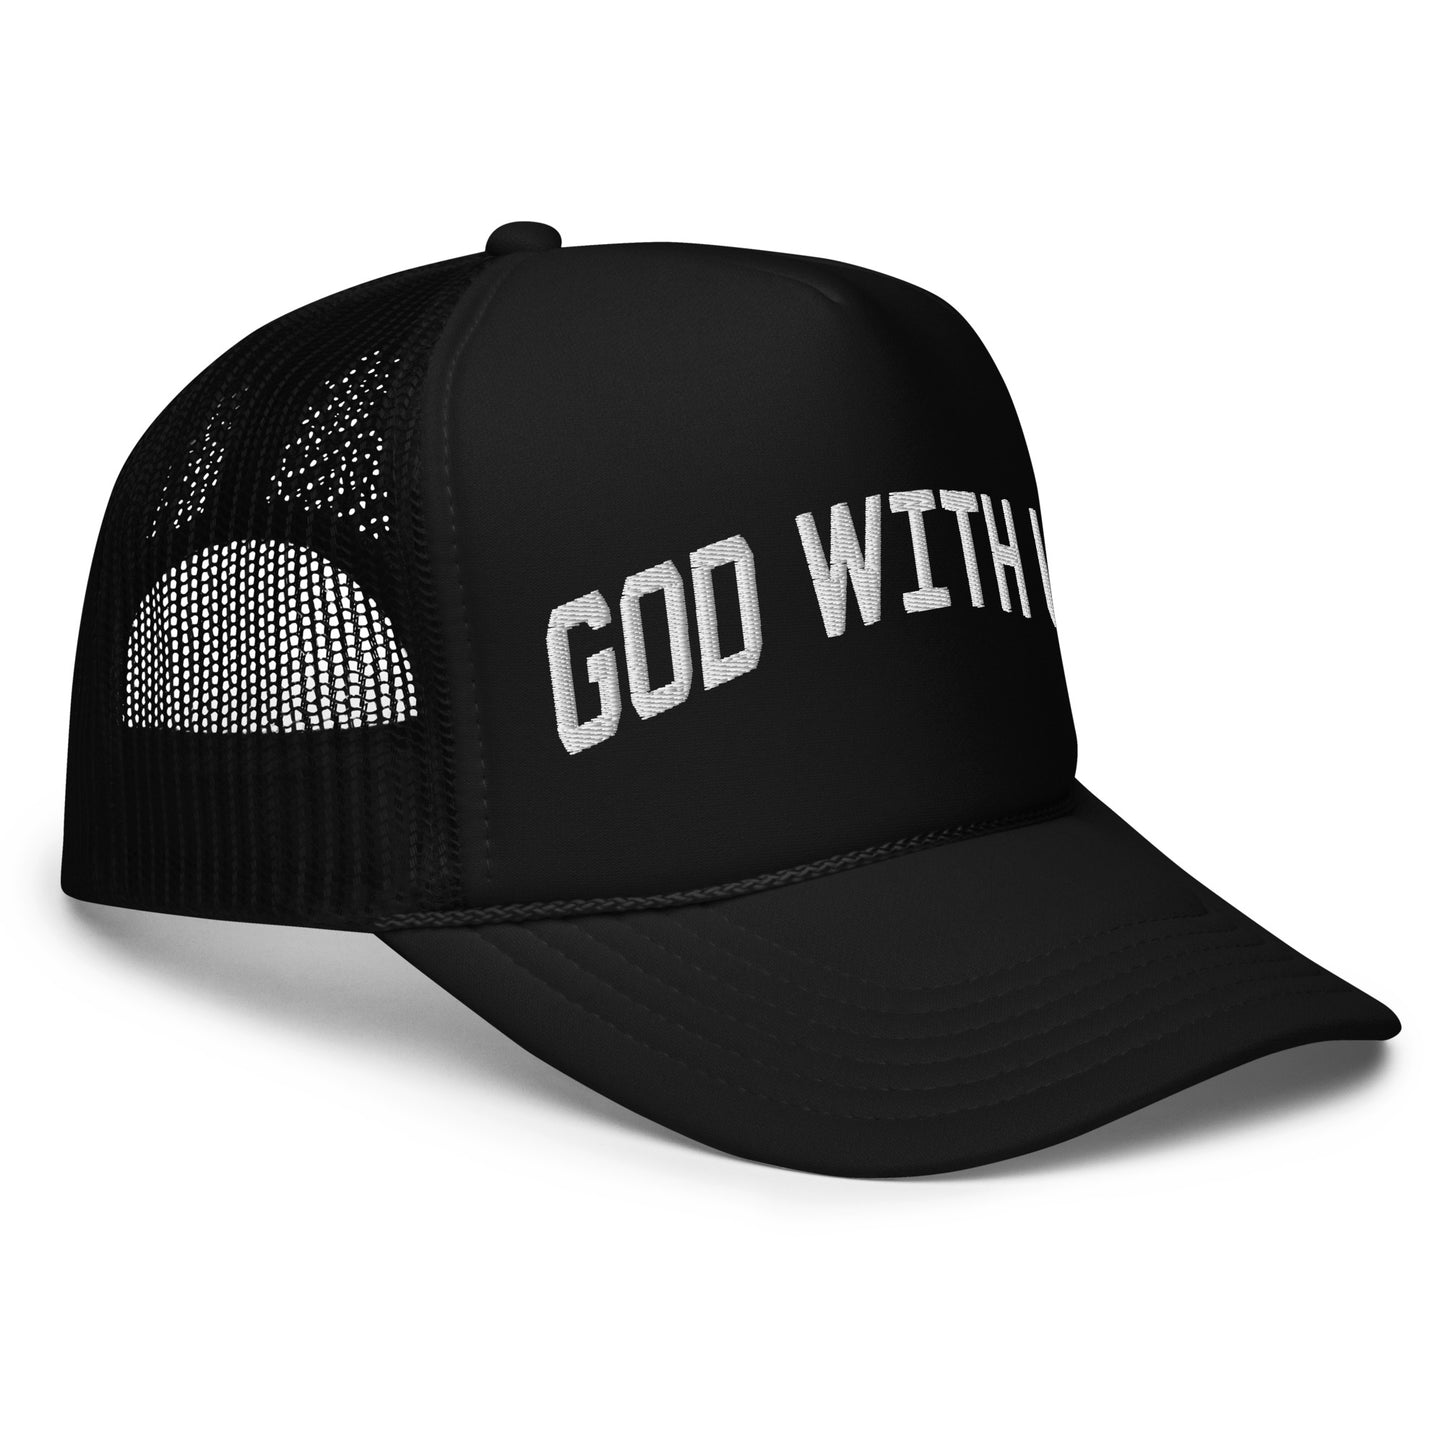 God With Us Foam Trucker Hat - Black